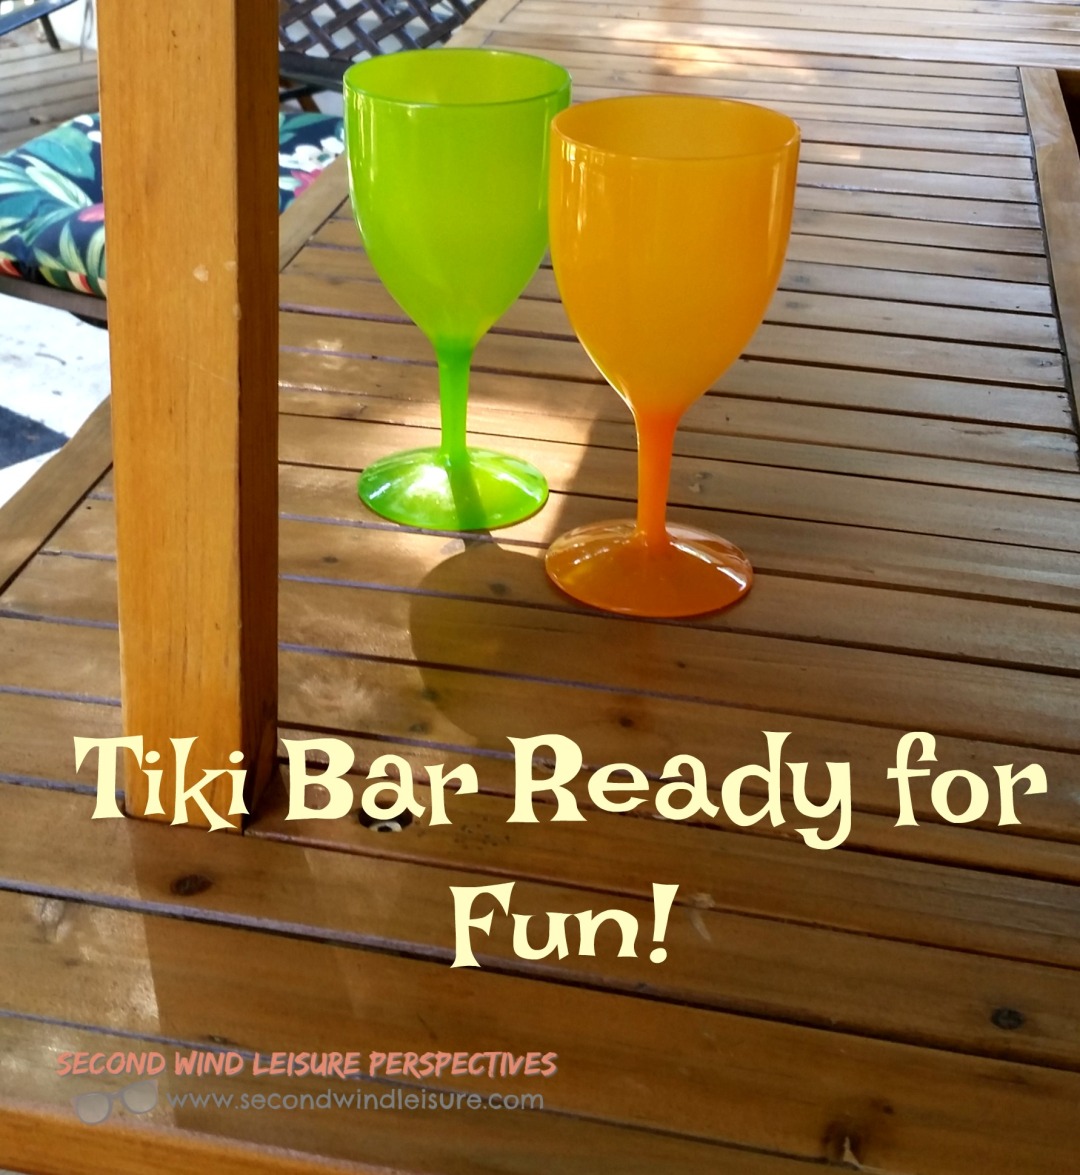 Tiki Bar Ready for Fun